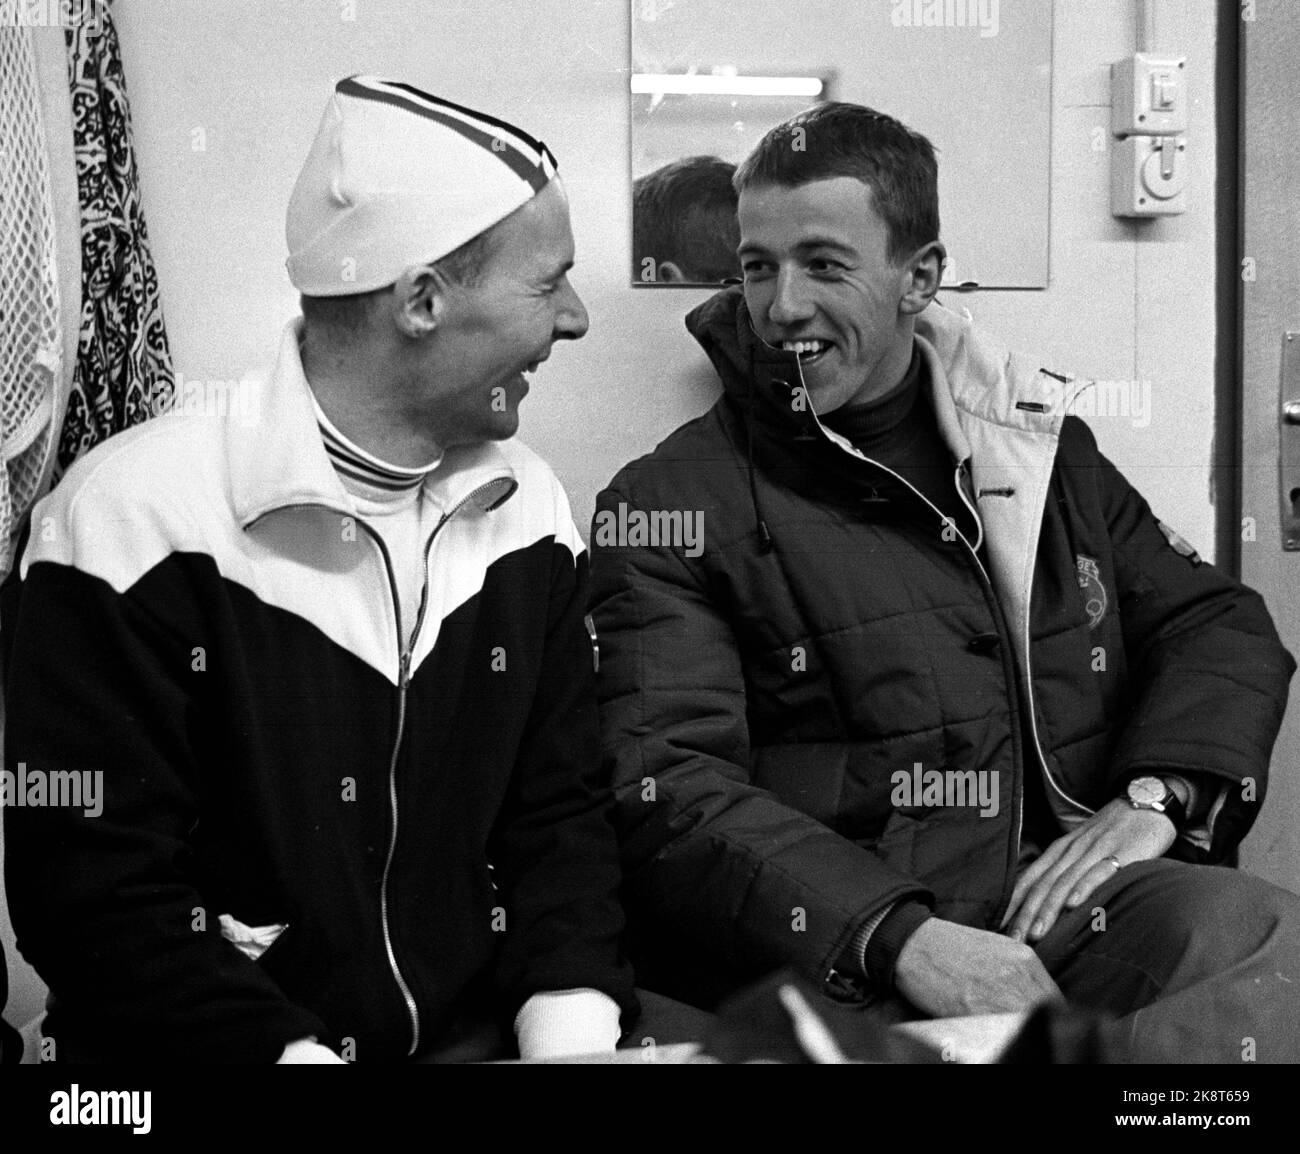 Innsbruck, Autriche 196402 les Jeux Olympiques d'hiver de 9th. Patinage rapide, hommes, 10 000 mètres. ! Le mètre de 0 000 a été partiellement détruit pour Knut Johannesen en raison d'une méthode douteuse de préparation de glace qui a fait la bande de glace au lieu de lisse juste avant le coup d'État devait aller. Mais Kuppern a le choix de la langue "la perte et la victoire avec le même esprit" et ici il (TV) est vu dans une conversation joyeuse avec le gagnant Johnny Nilsson, Suède dans l'armoire après la course. Kuppern devient le n° 3. Photo: Actuel / NTB Banque D'Images